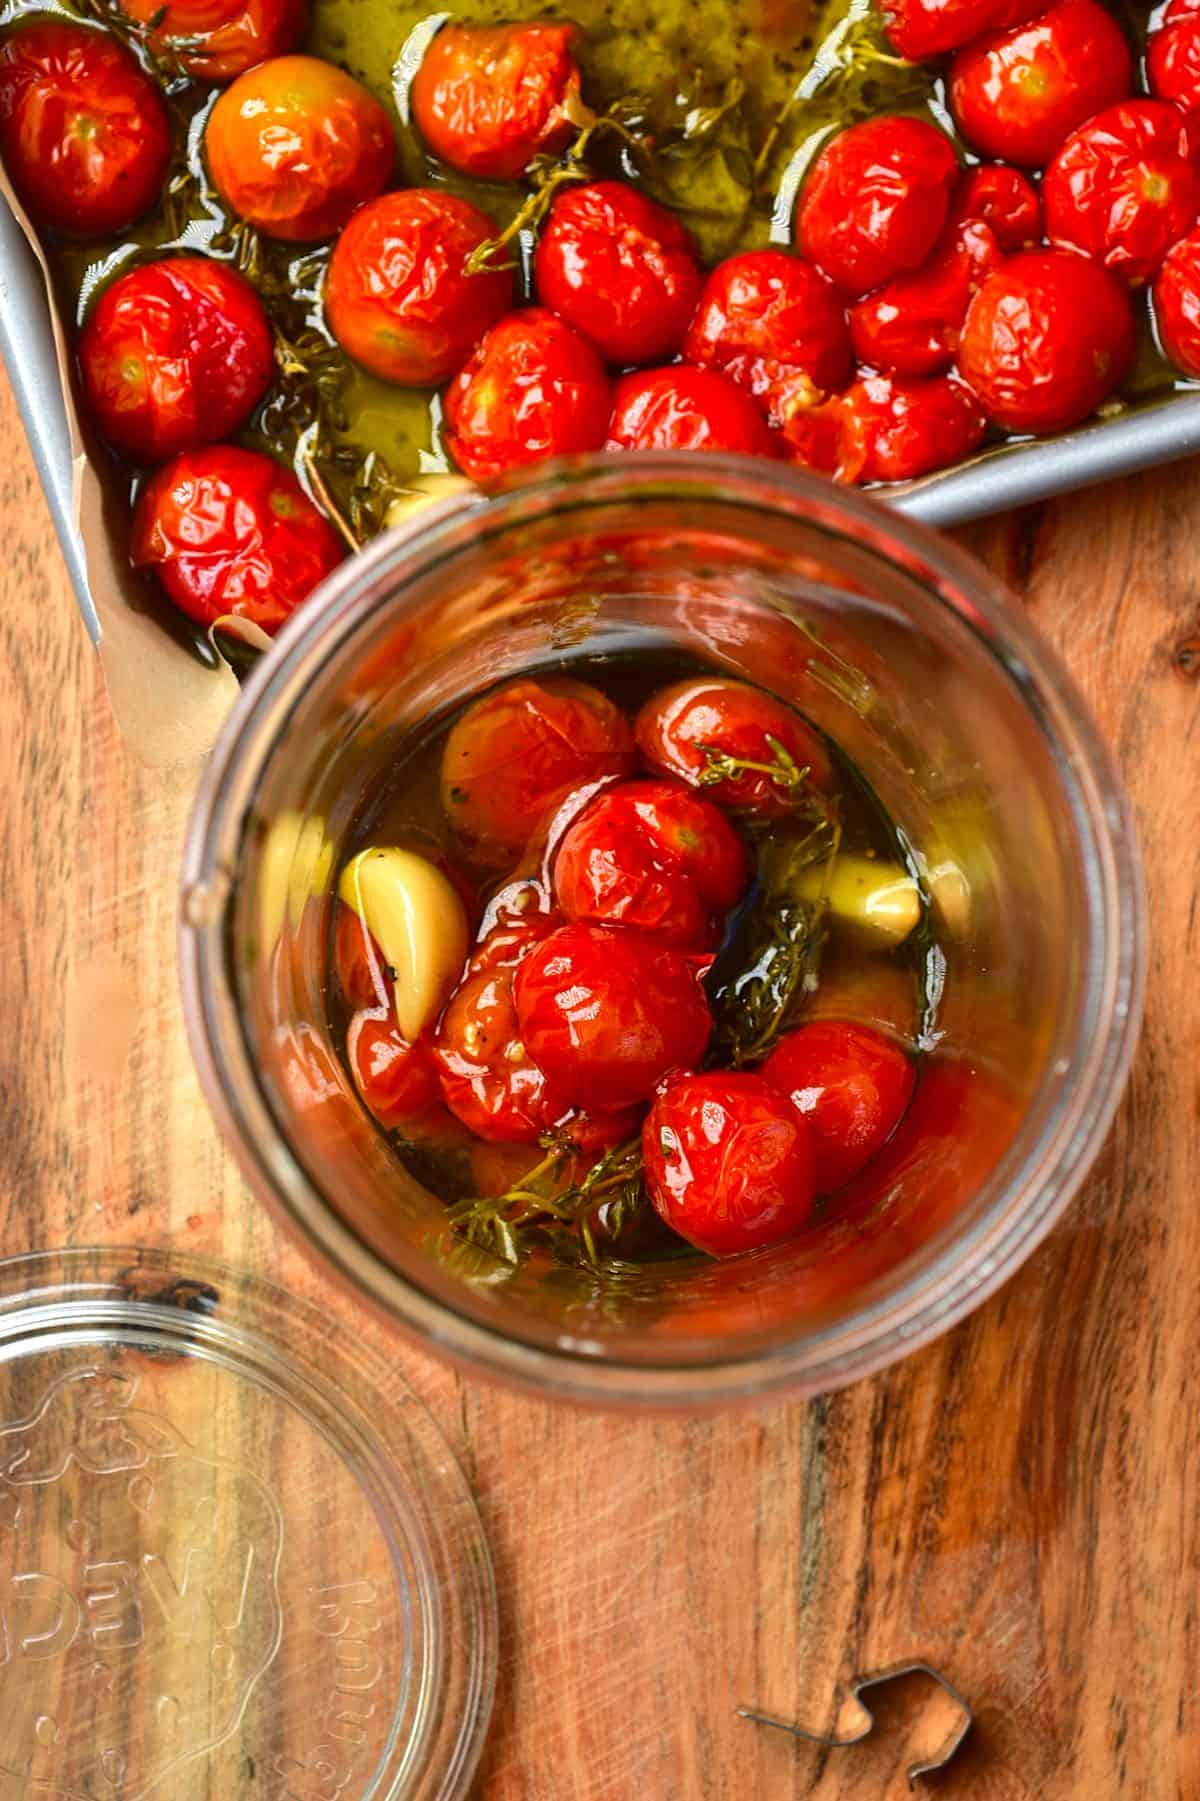 Tomato confit in a jar